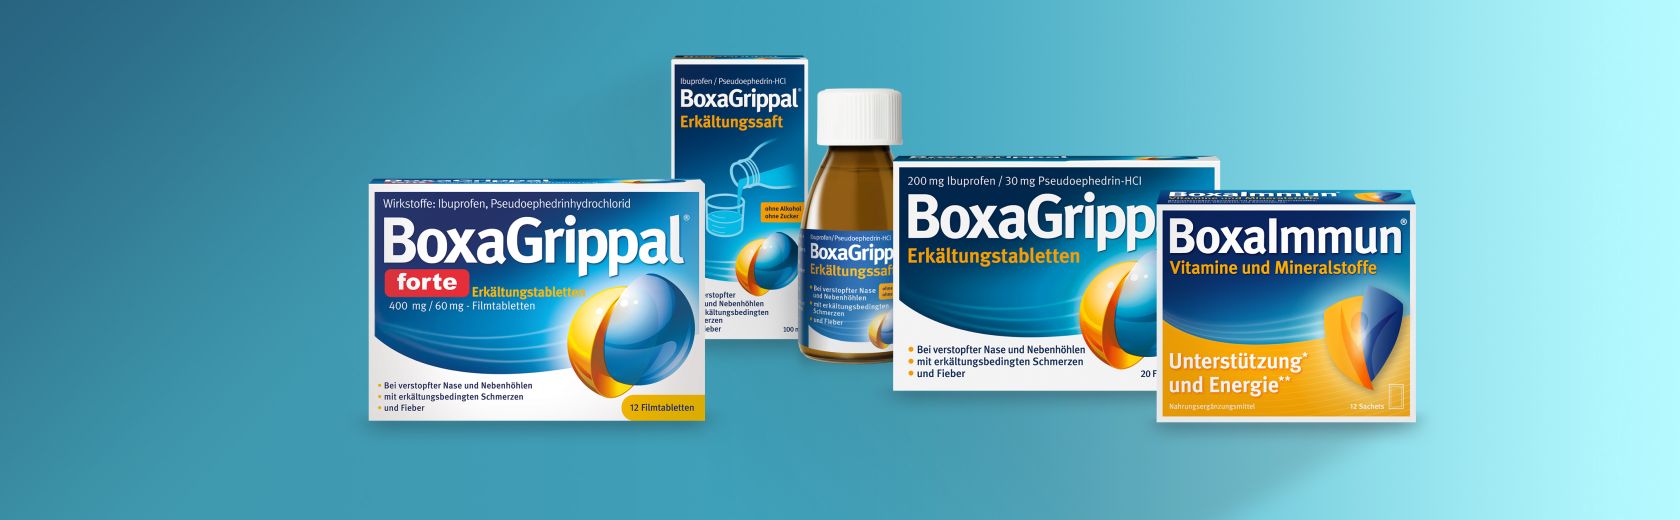 Verschiedene Produkte von BoxaGrippal